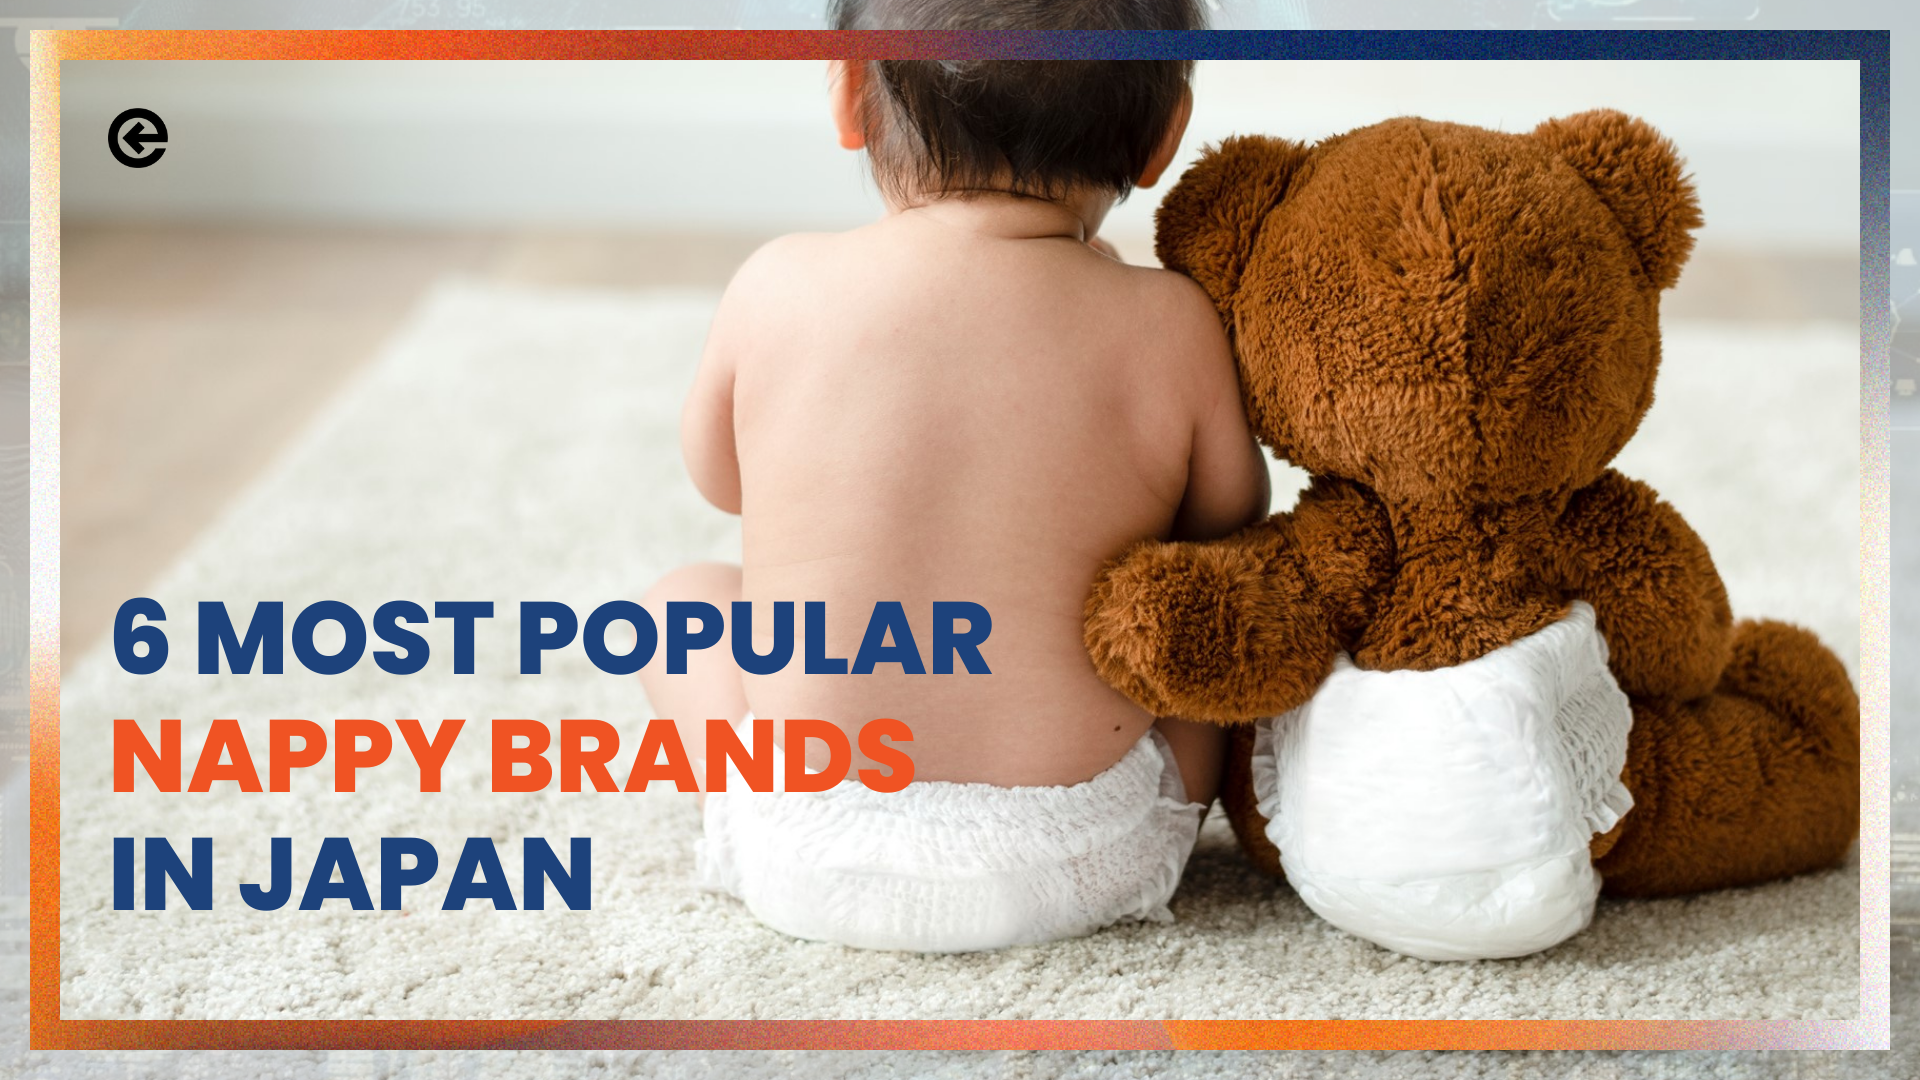 6 marcas de pañales más populares fabricadas en Japón